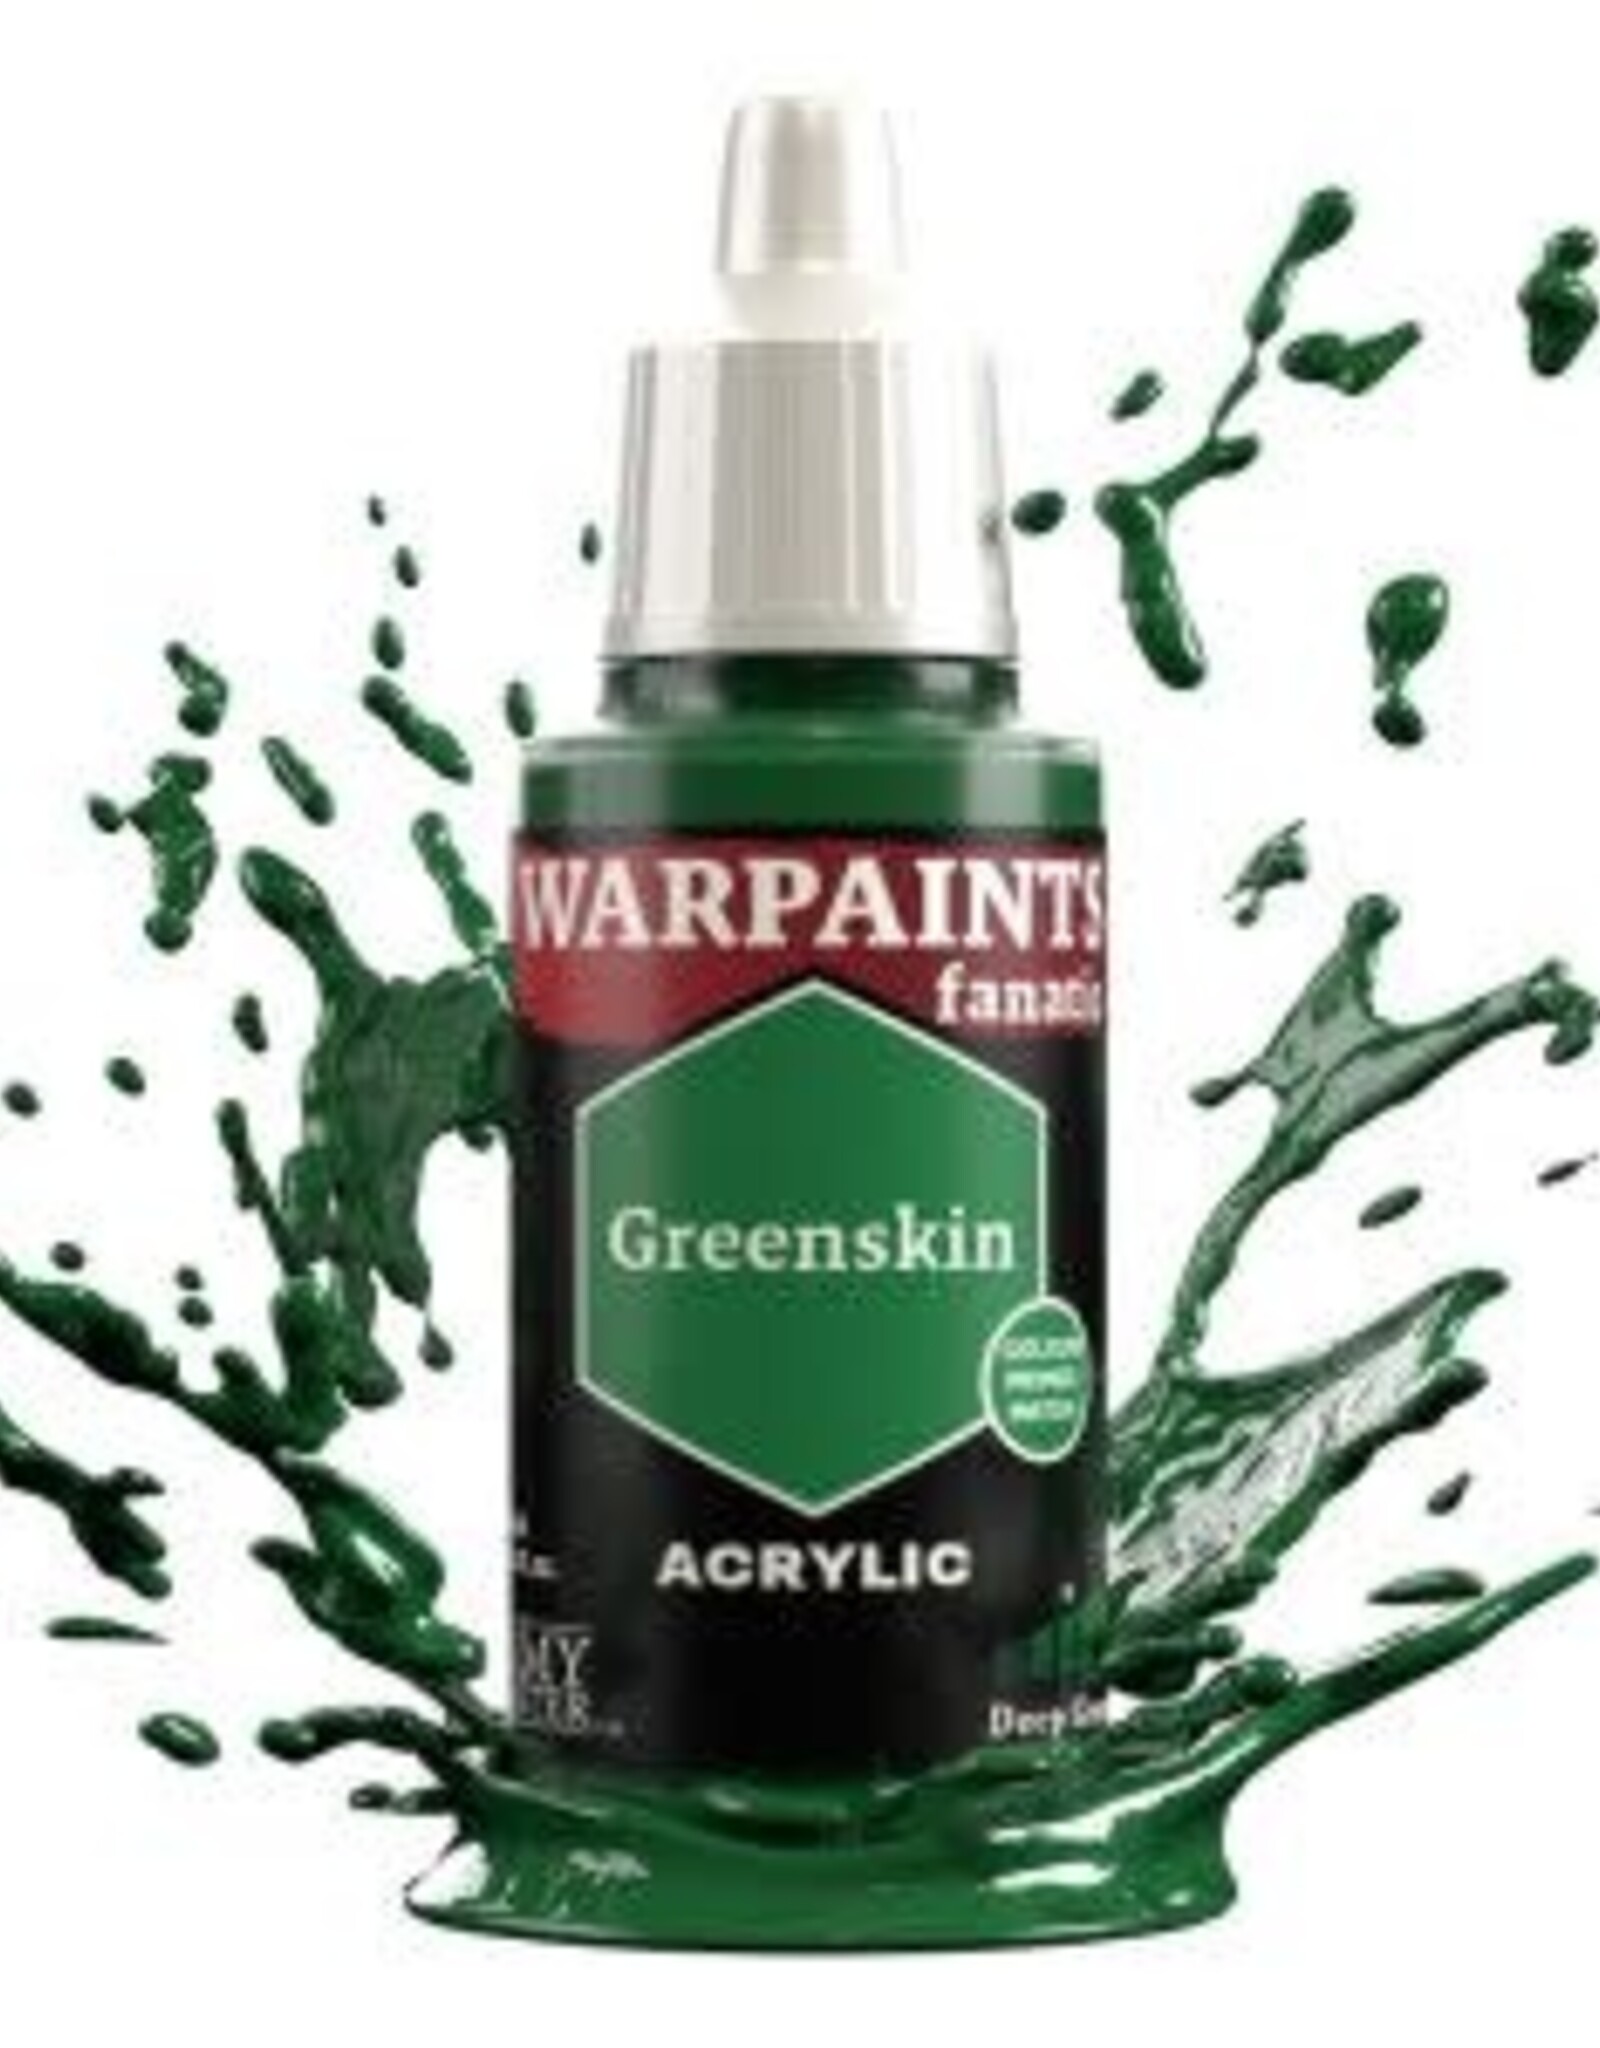 Warpaints Fanatic: Greenskin